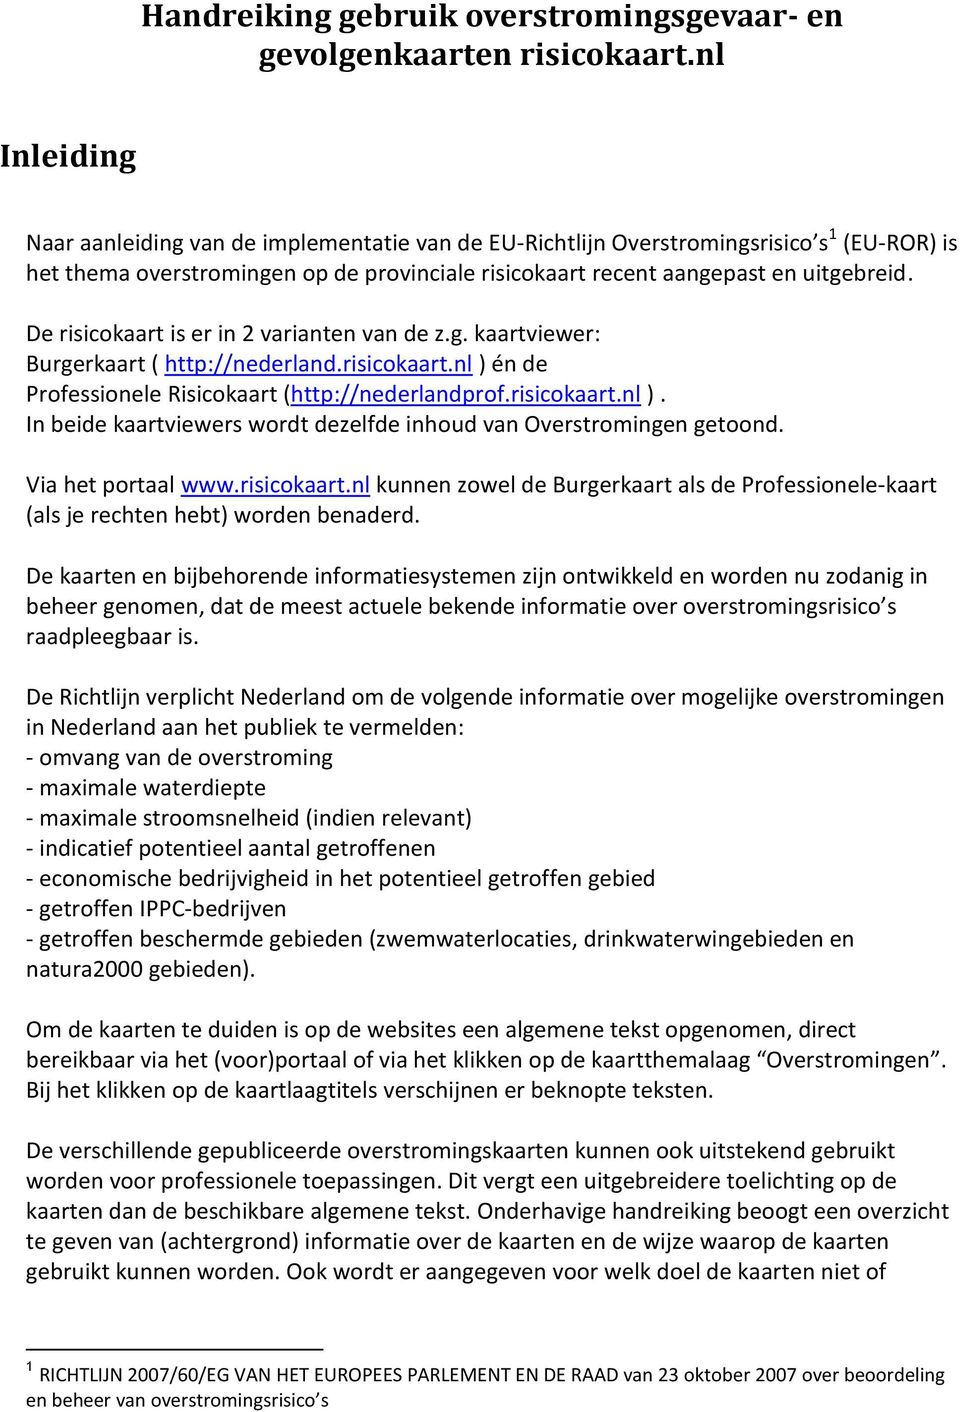 De risicokaart is er in 2 varianten van de z.g. kaartviewer: Burgerkaart ( http://nederland.risicokaart.nl ) én de Professionele Risicokaart (http://nederlandprof.risicokaart.nl ). In beide kaartviewers wordt dezelfde inhoud van Overstromingen getoond.